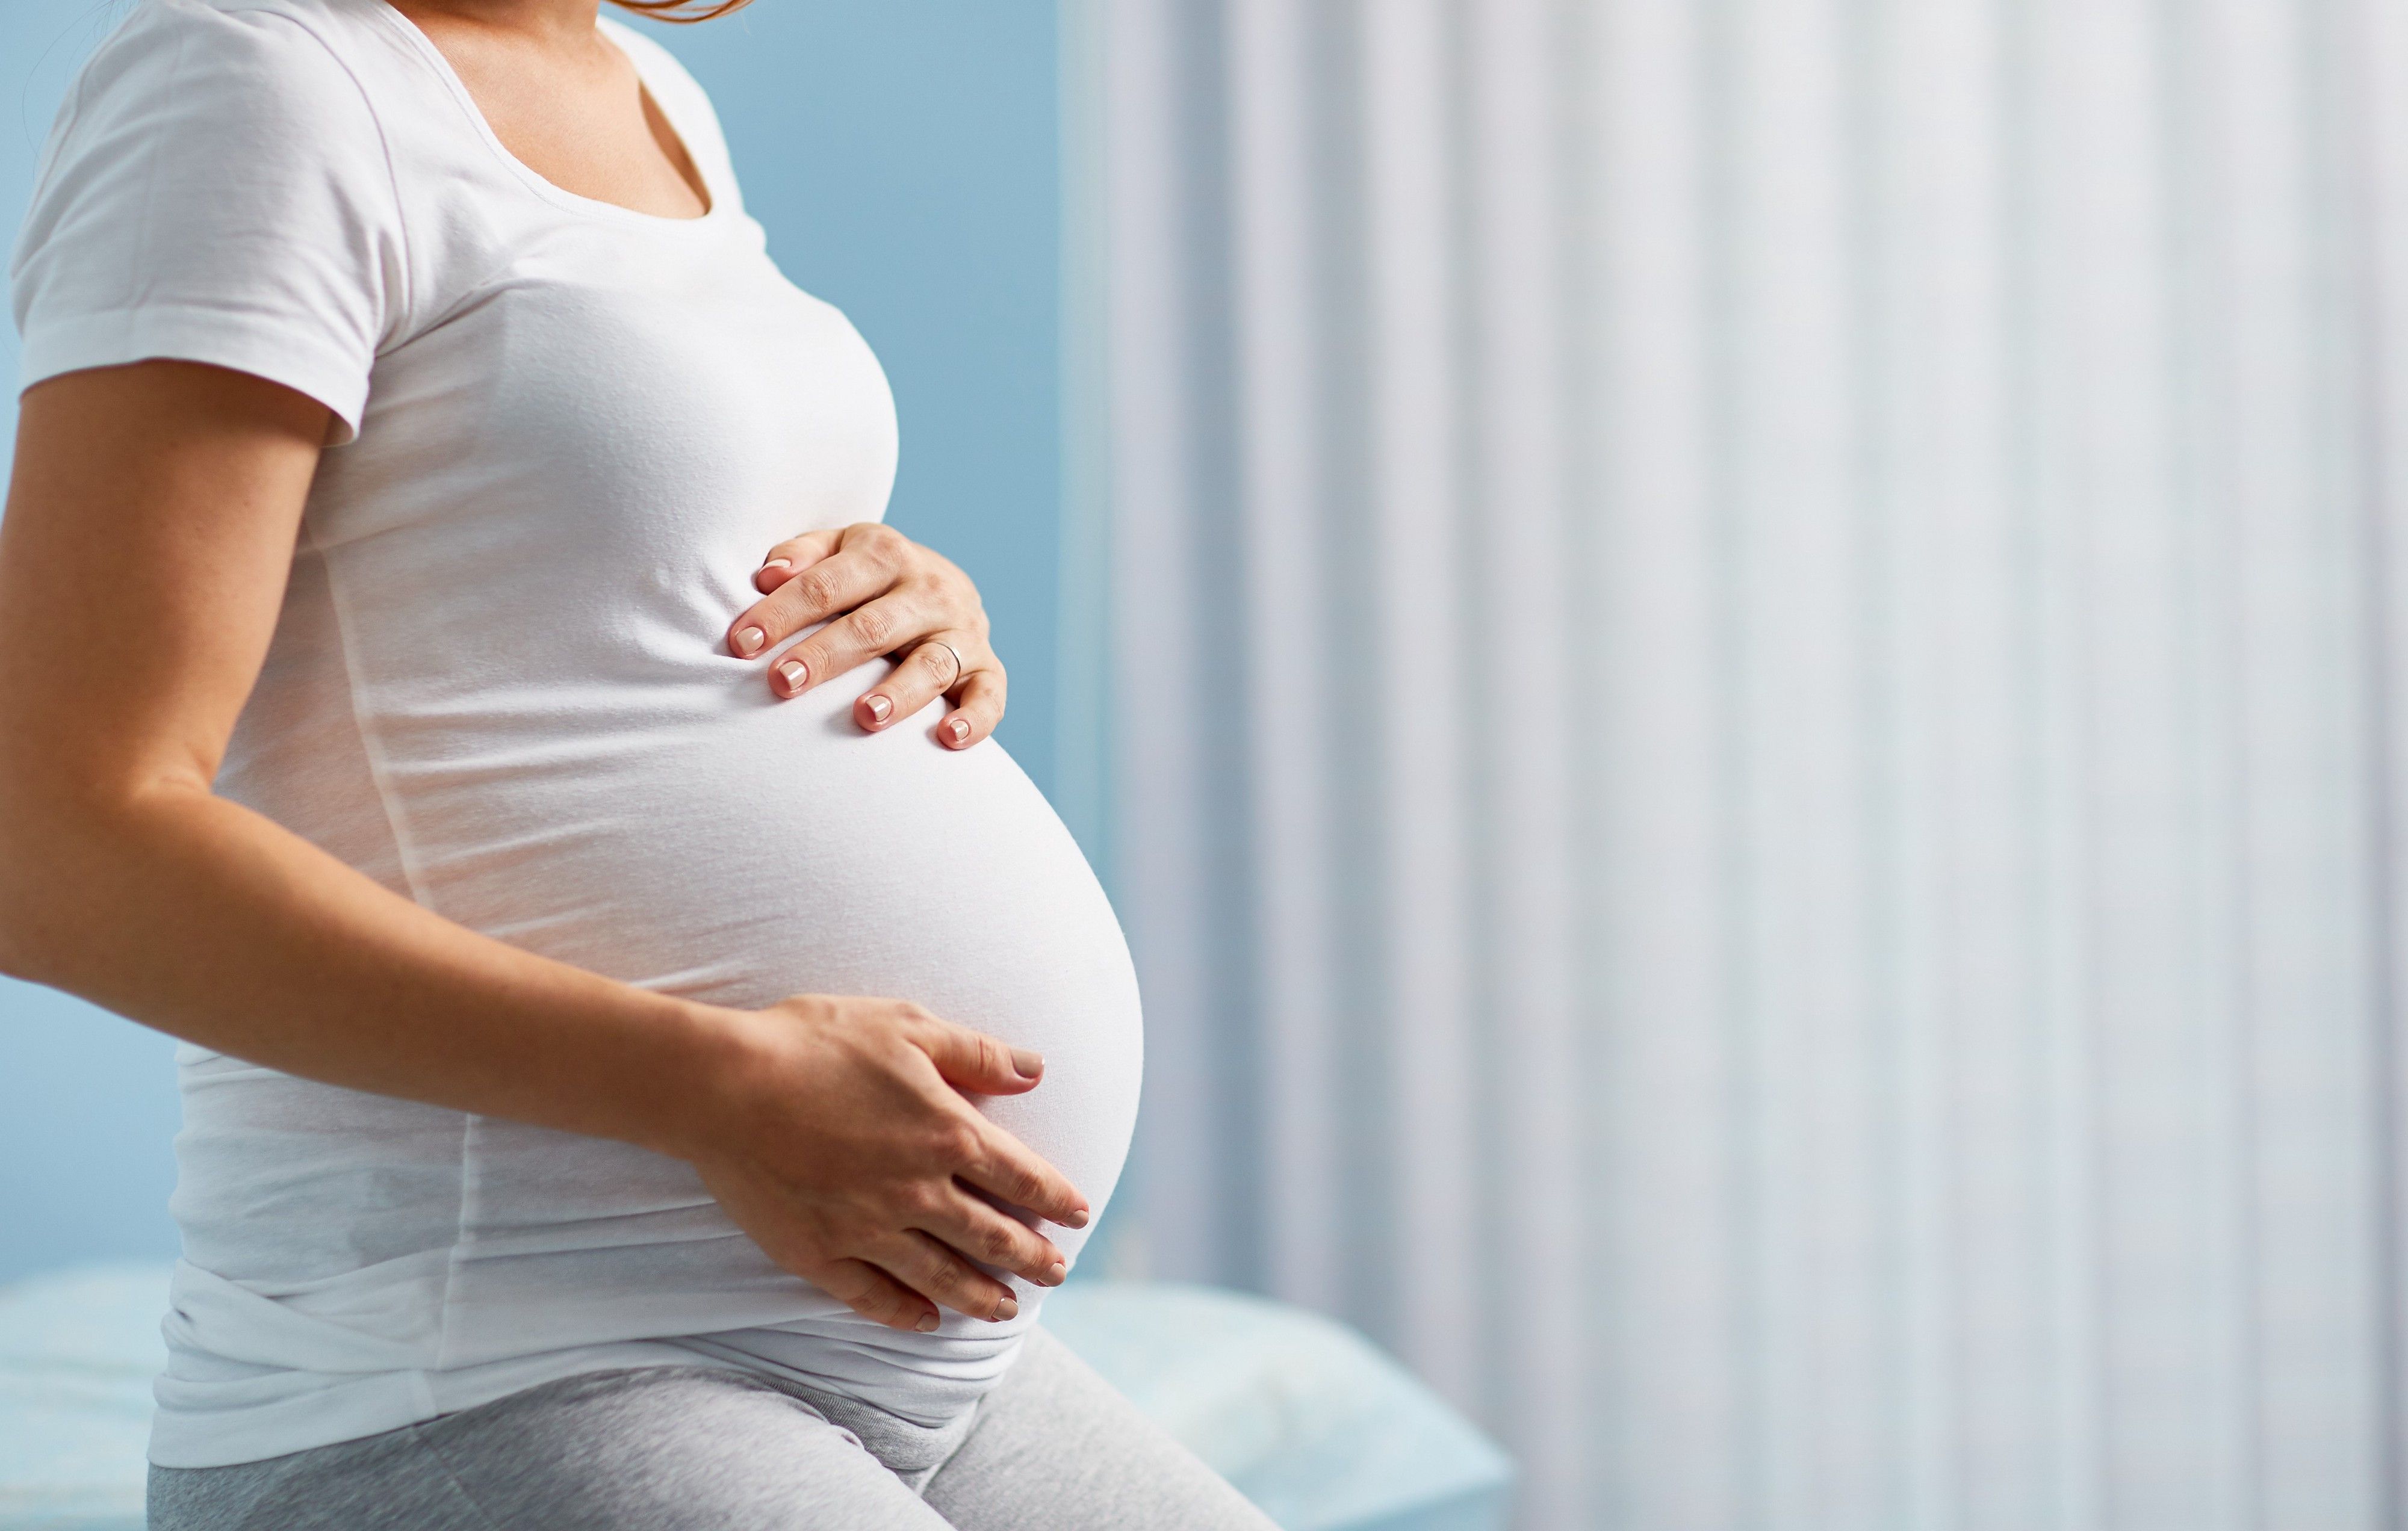 Кабмин намерен защитить трудовые права беременных женщин и молодых мам в декрете